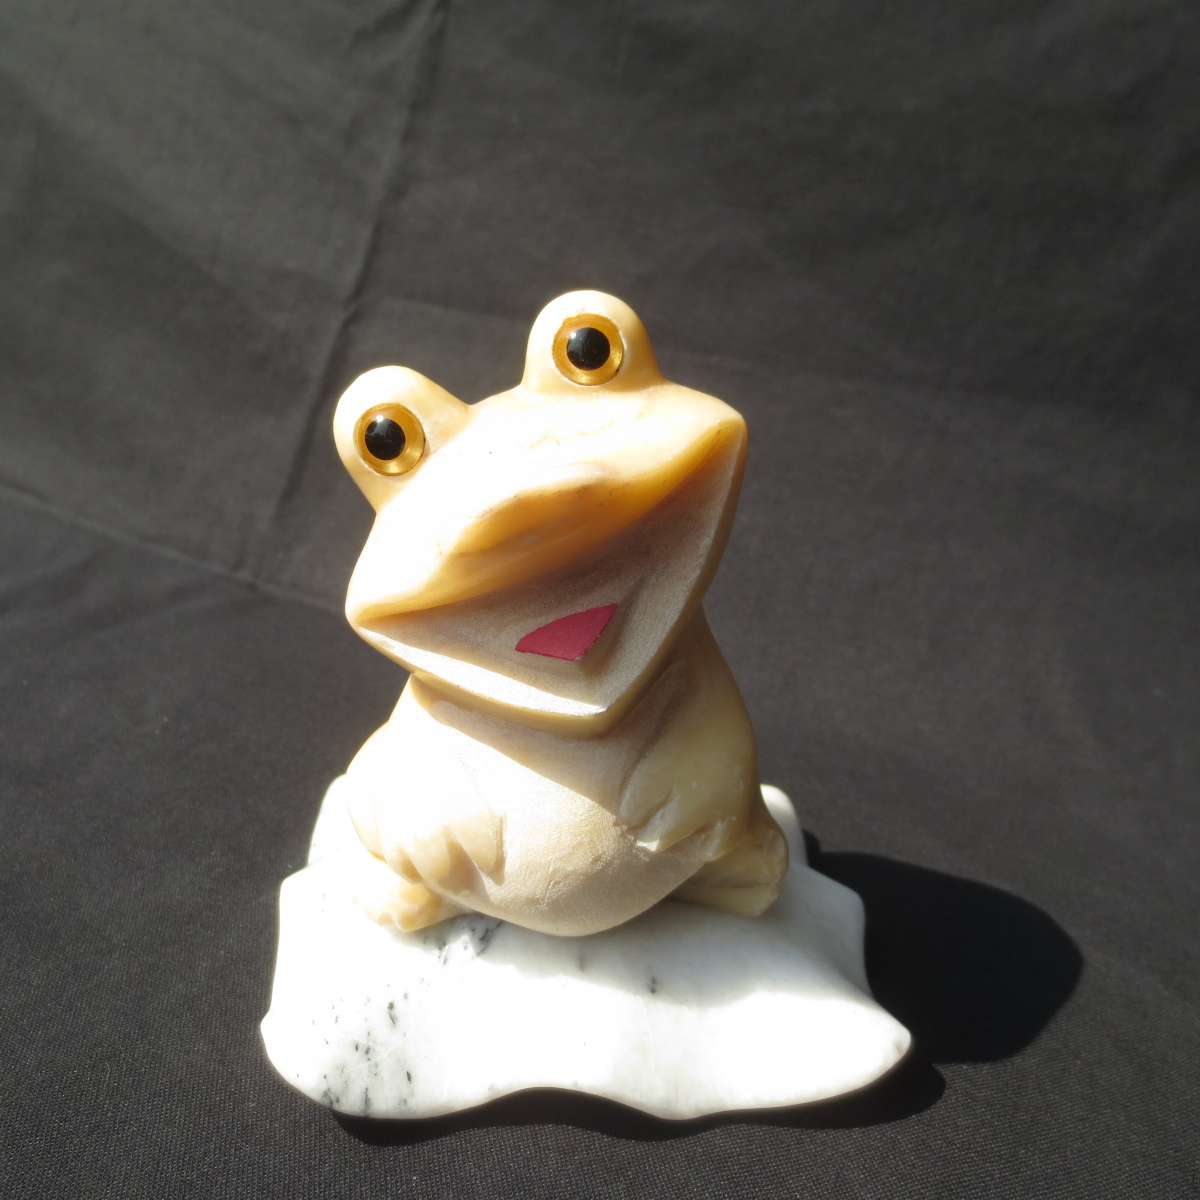 蛙 かえる カエル ひょうきん かわいい Frog 置物 置き物 雑貨 御影石のオブジェ 石のフロッグ 送料無料 KA08